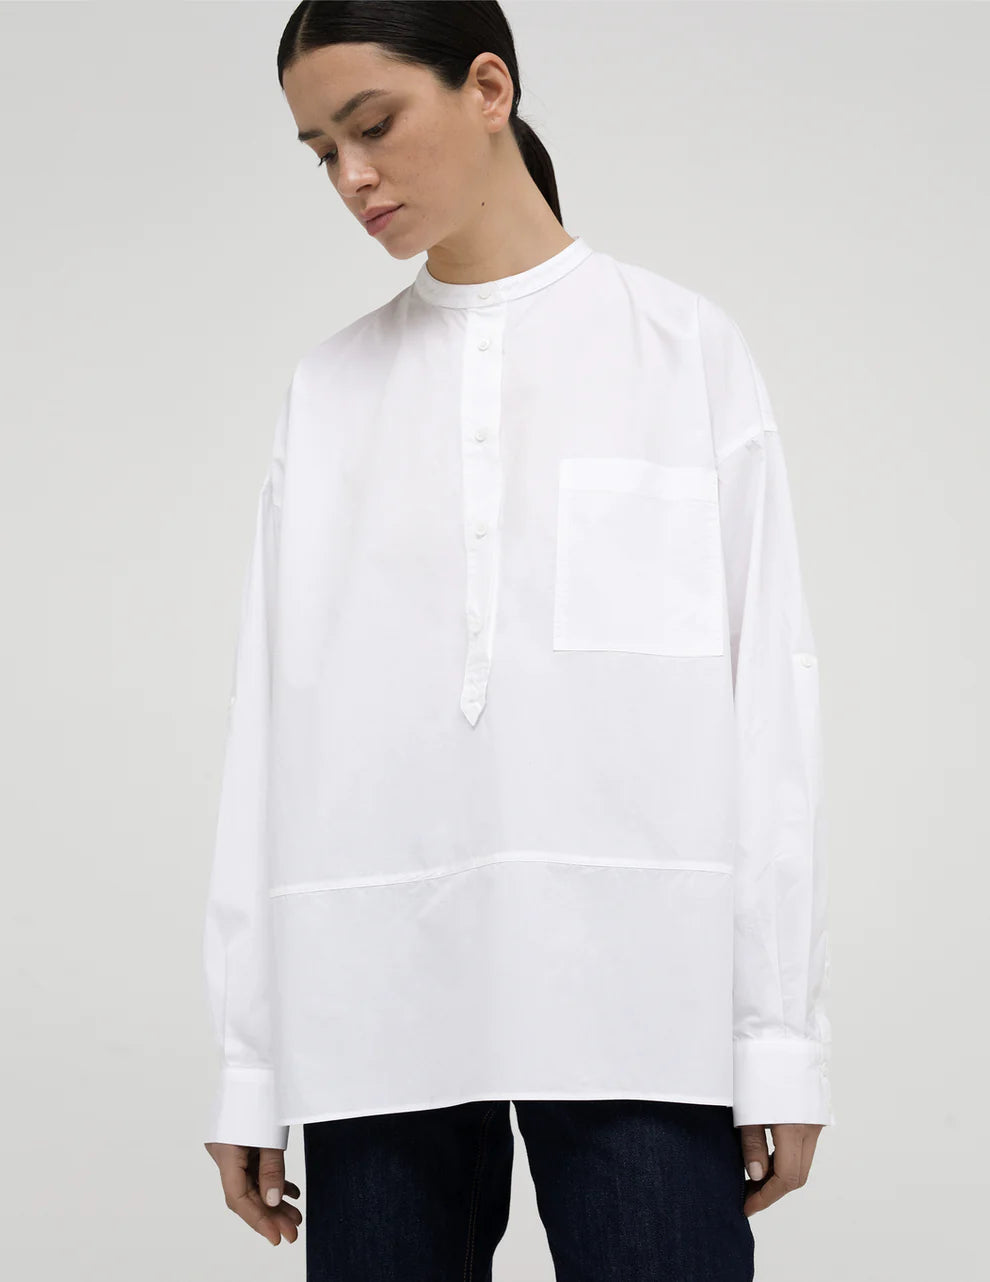 Mandarin-Style Collar Shirt